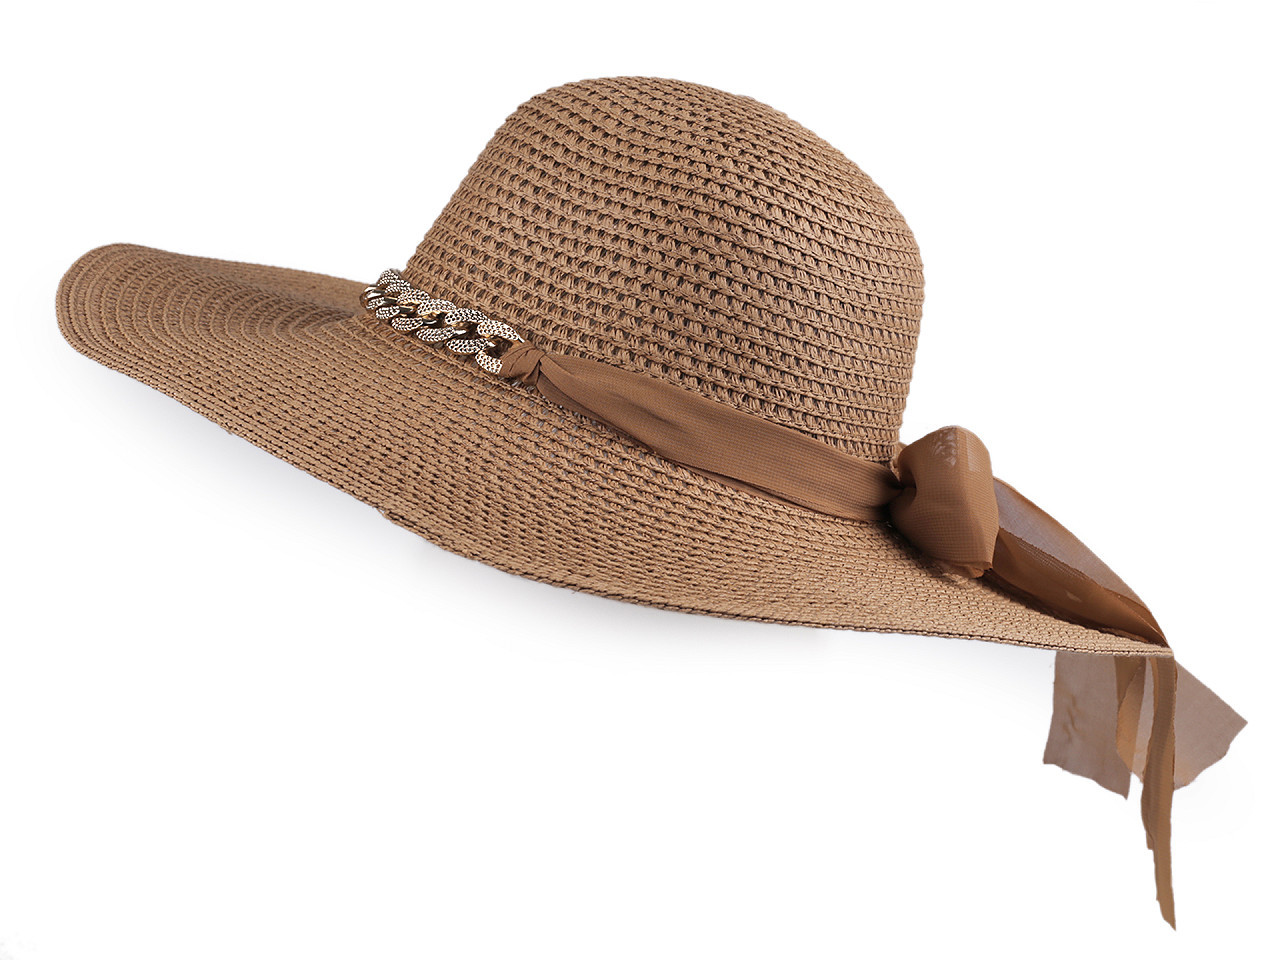 Dámský letní klobouk / slamák, barva 20 hnědá přírodní